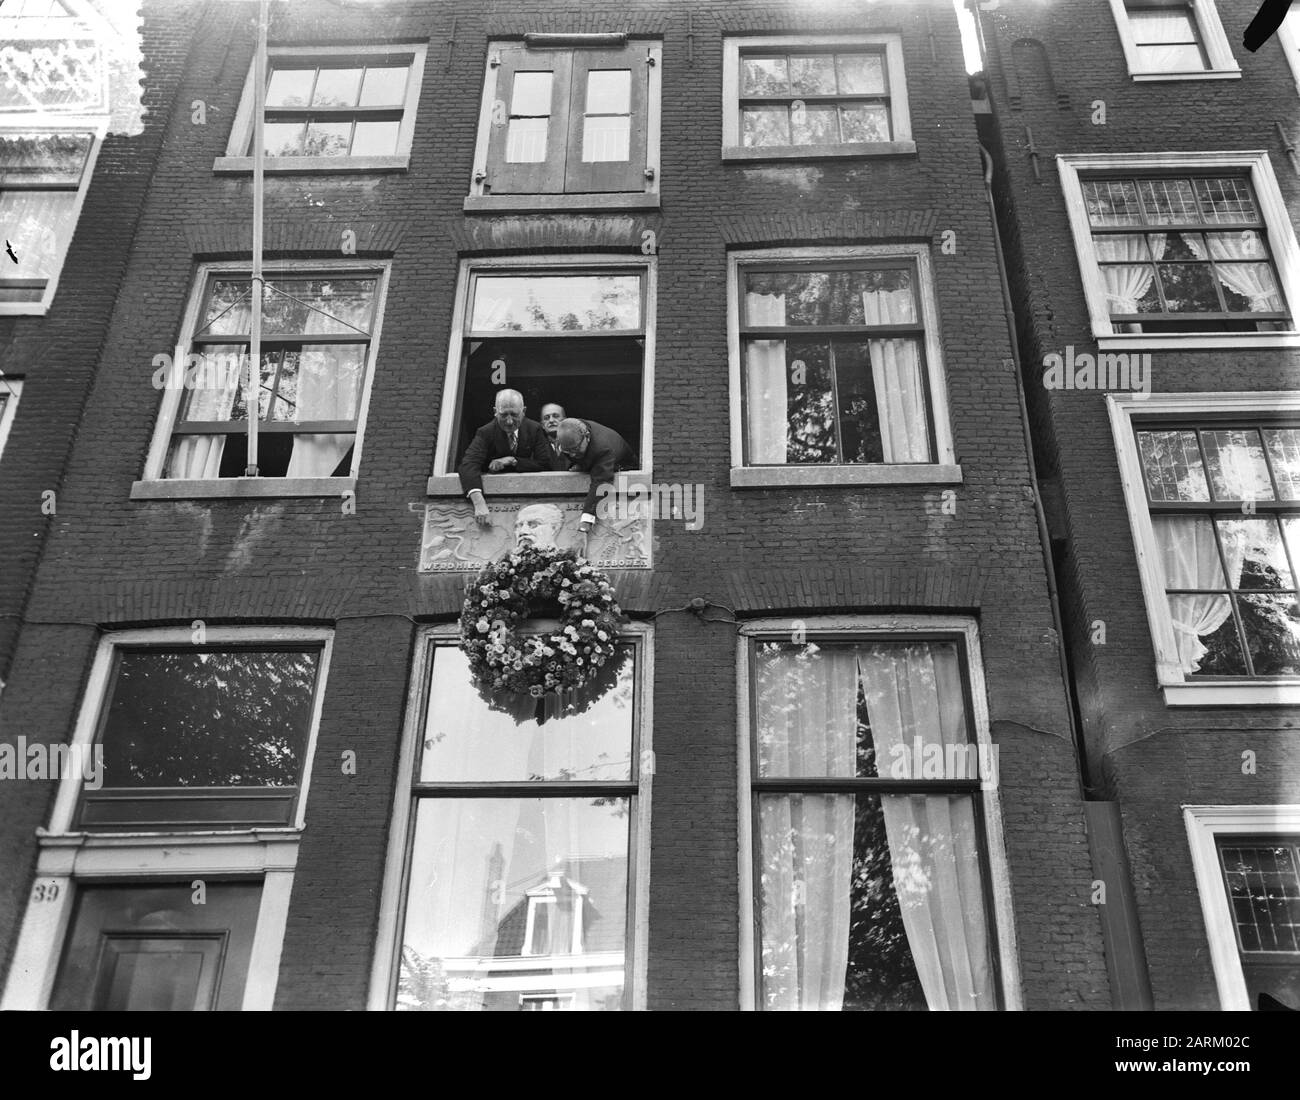 Dr. Lely commemorazione corona a casa Leidsegracht Amsterdam Data: 23 settembre 1954 luogo: Amsterdam, Noord-Holland Parole Chiave: Commemorazioni Foto Stock